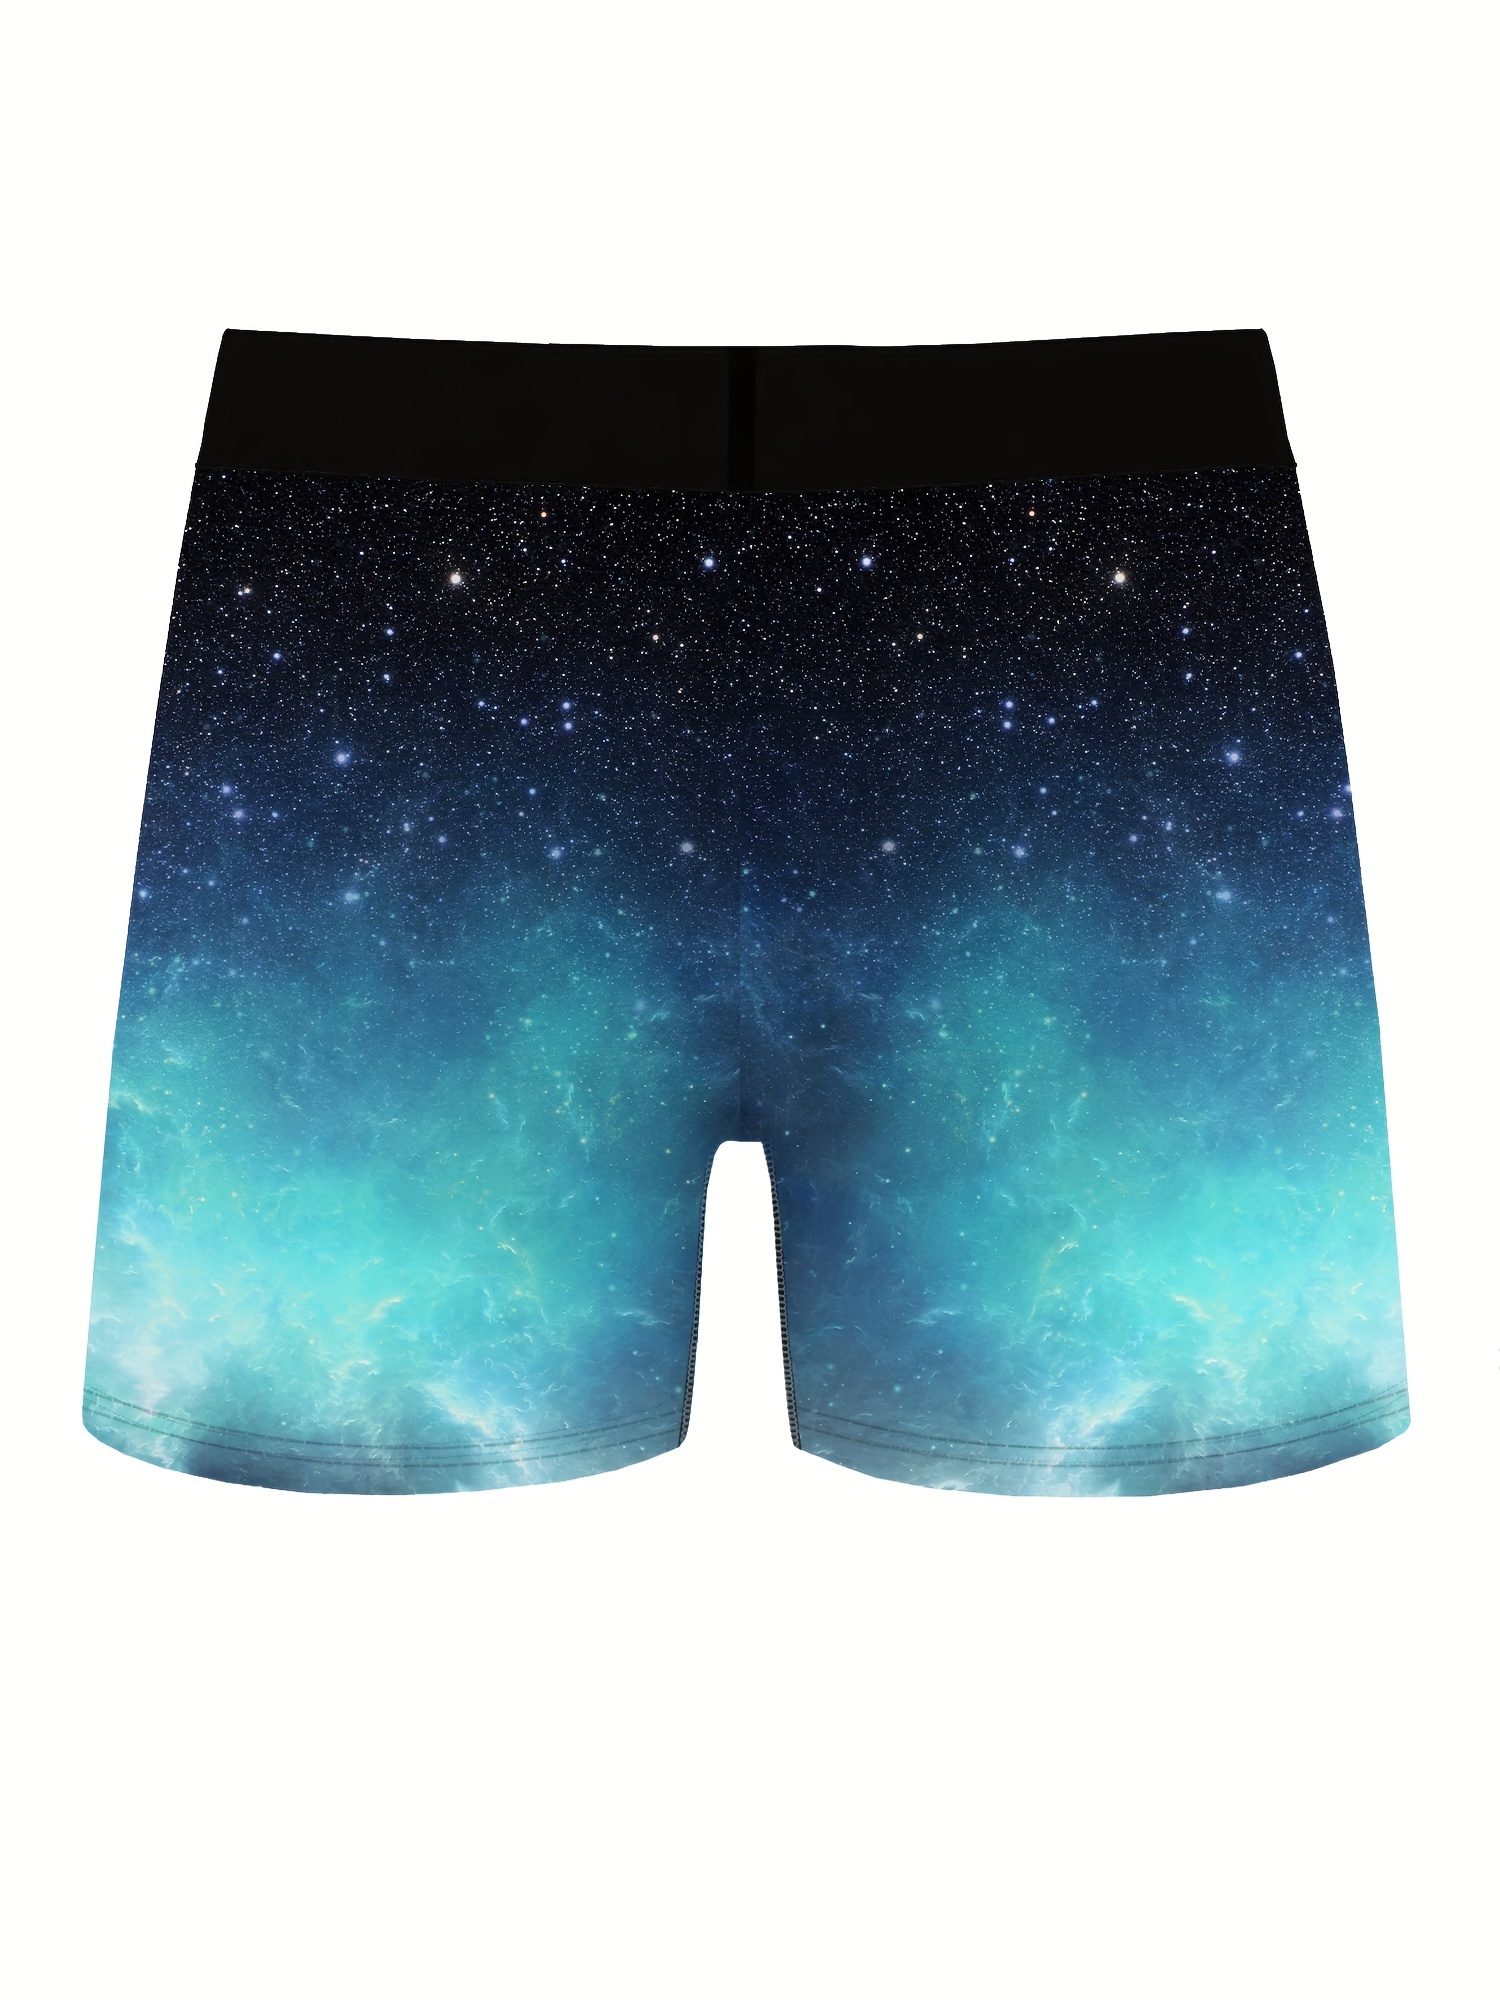 mens puppy starry sky pattern high stretch comfortable boxer briefs underwear details 0